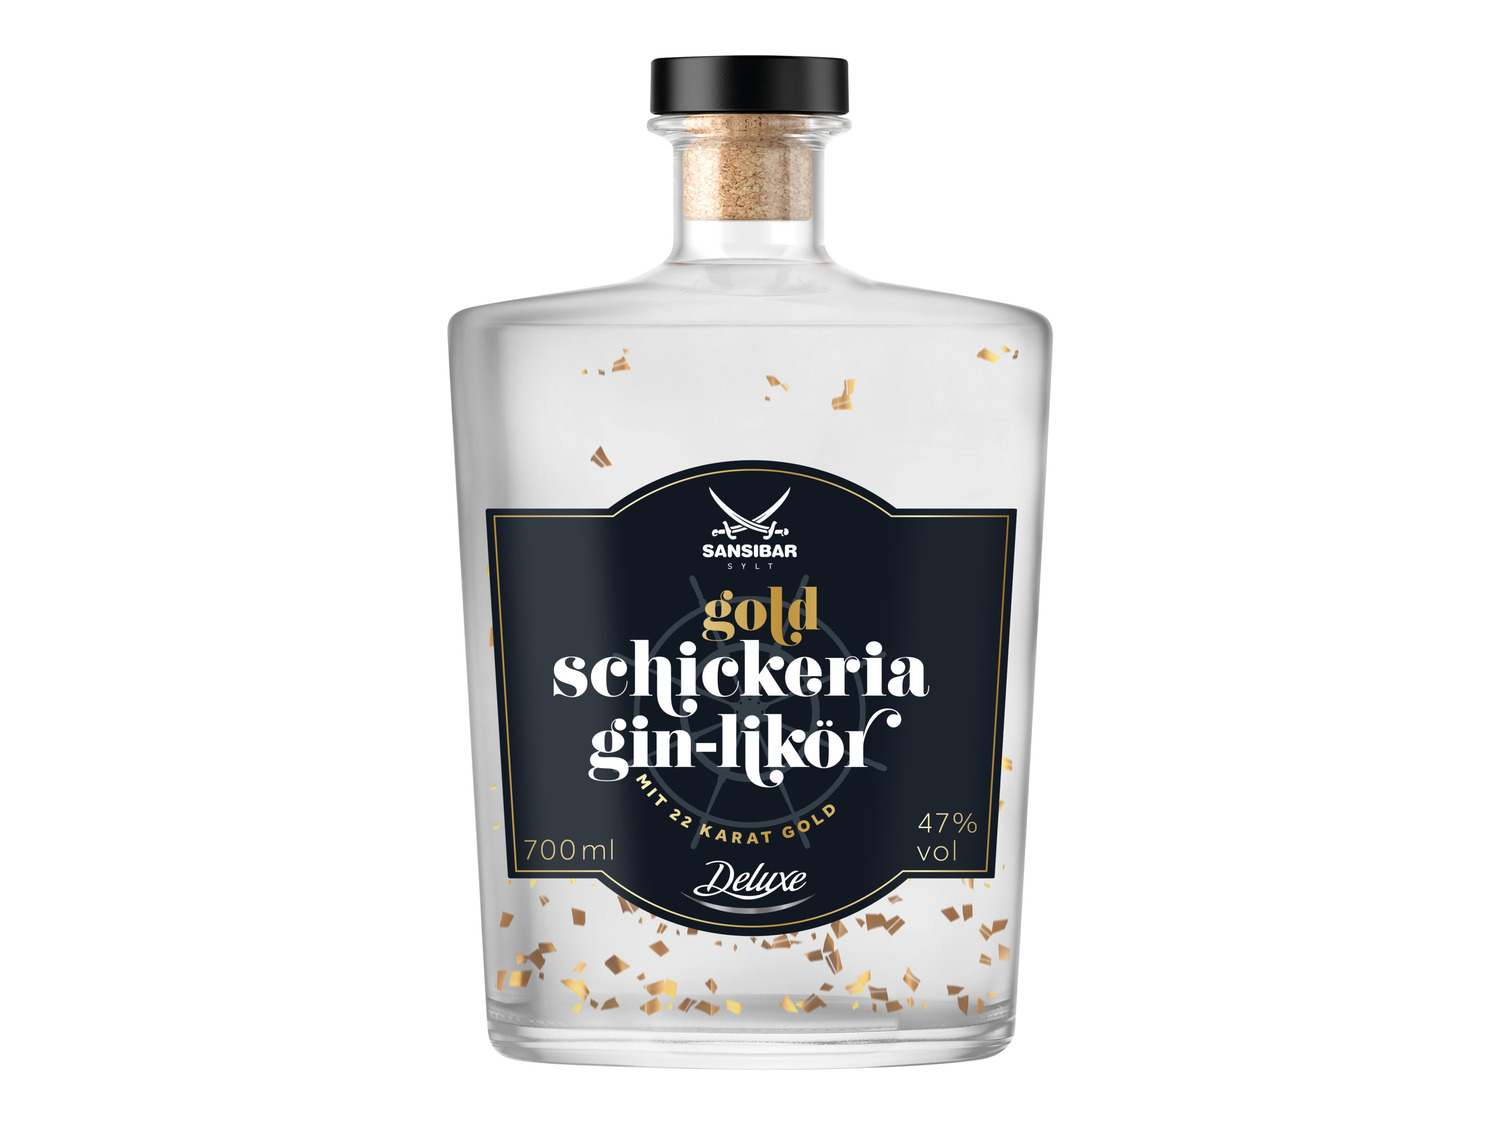 47% Schickeria LIDL SANSIBAR | Gold mit Gin-Likör Vol